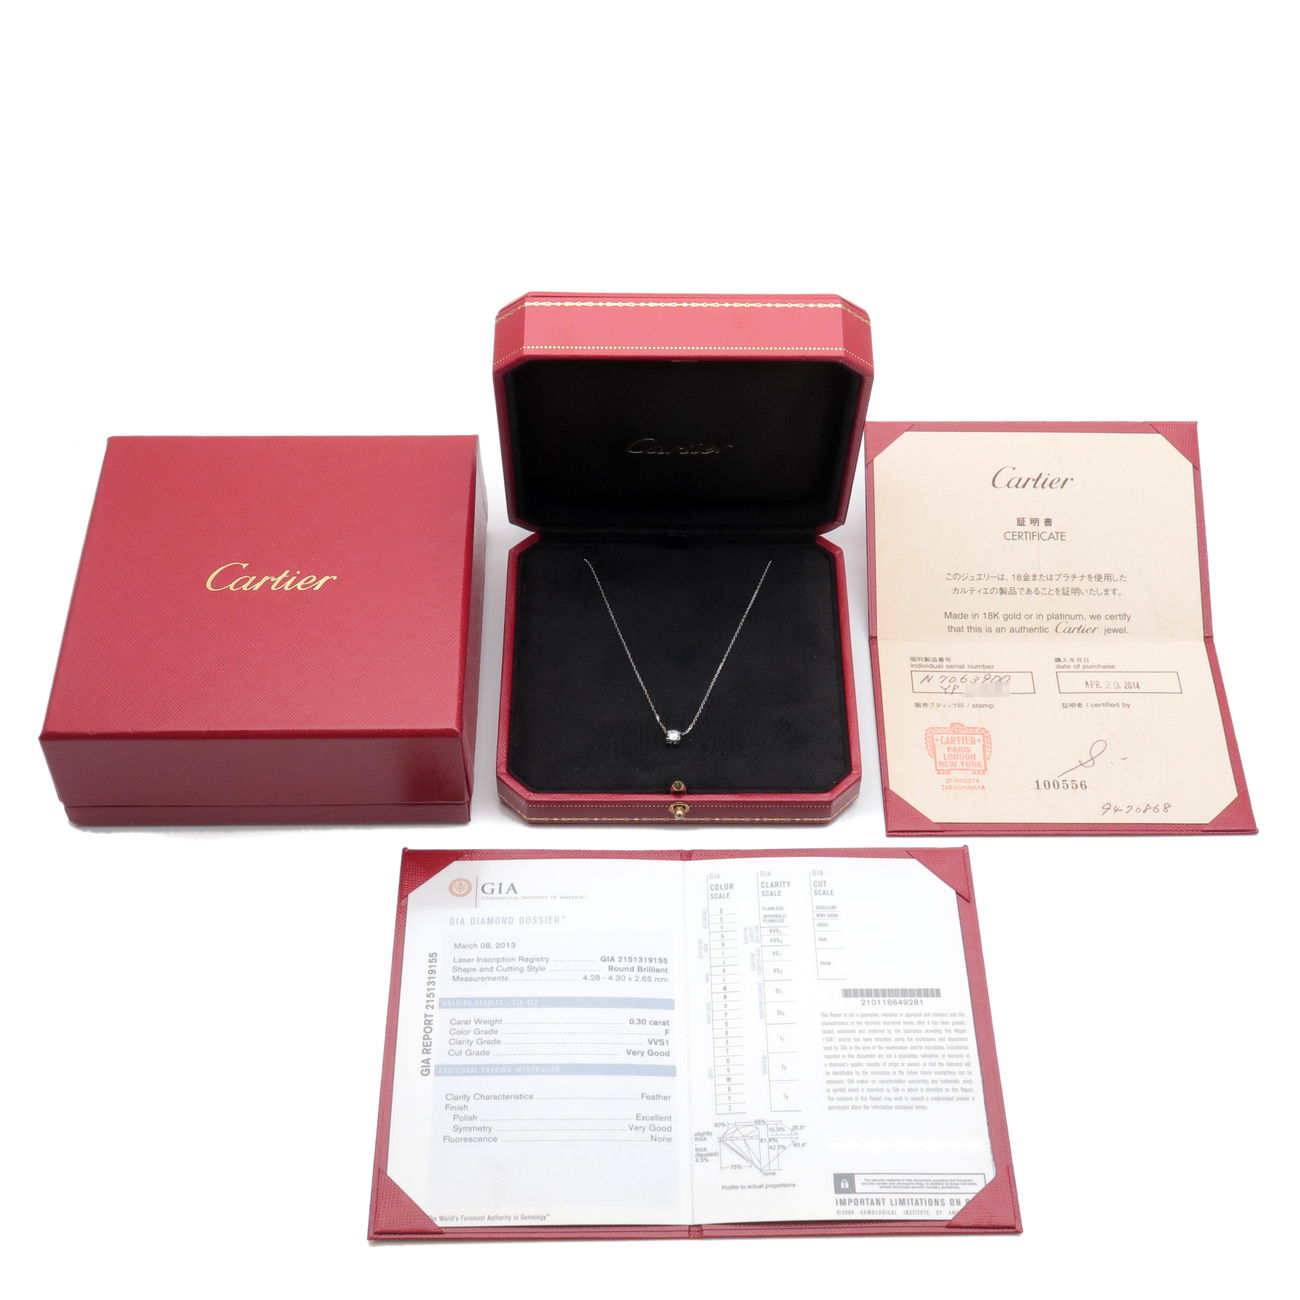 Cartier C De Cartier Diamond Necklace 0.30ct K18 750 White Gold